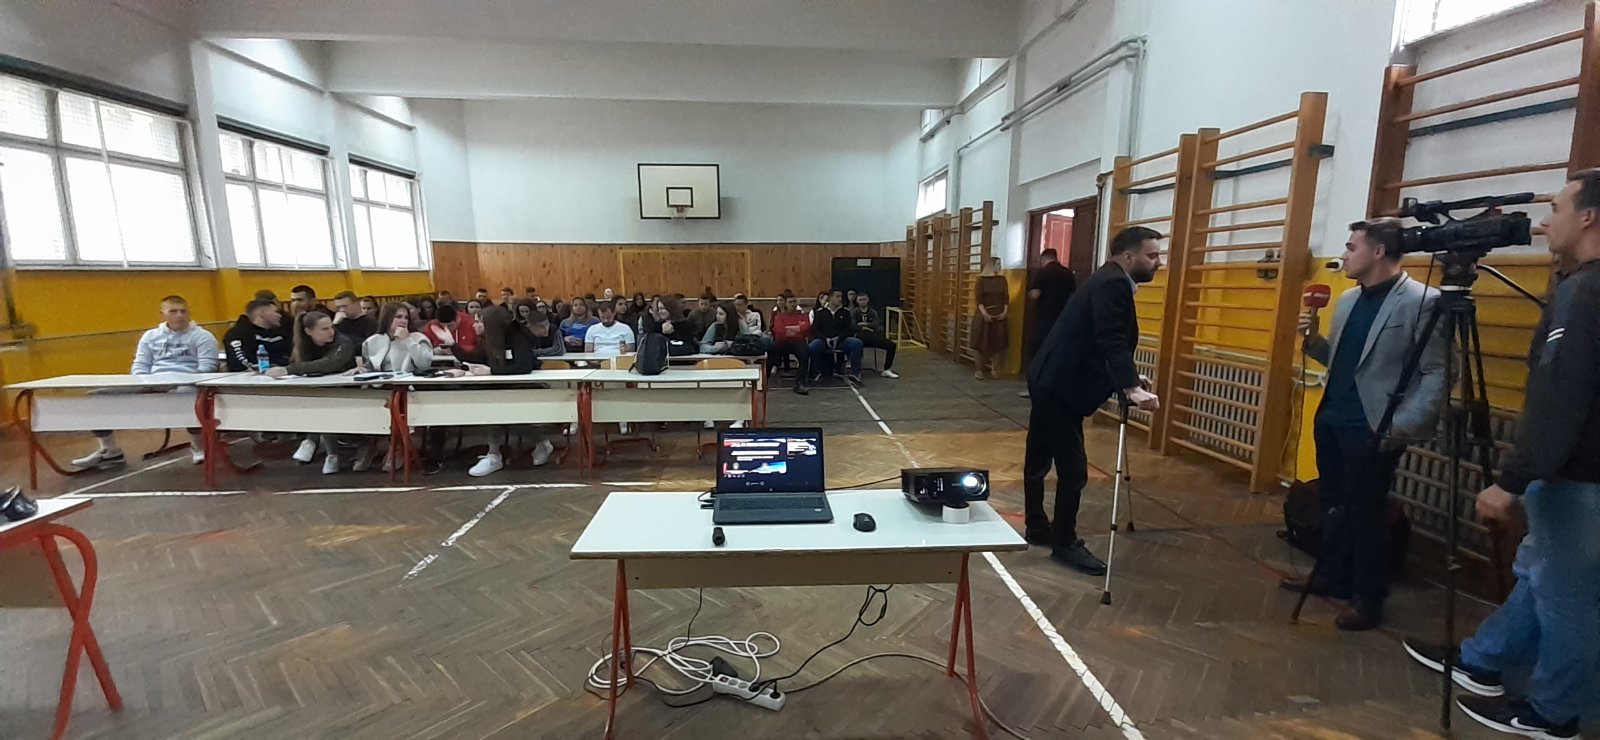 Предавање на тему „Безбједност младих у саобраћају“ одржано у Mашинској школи у Приједору